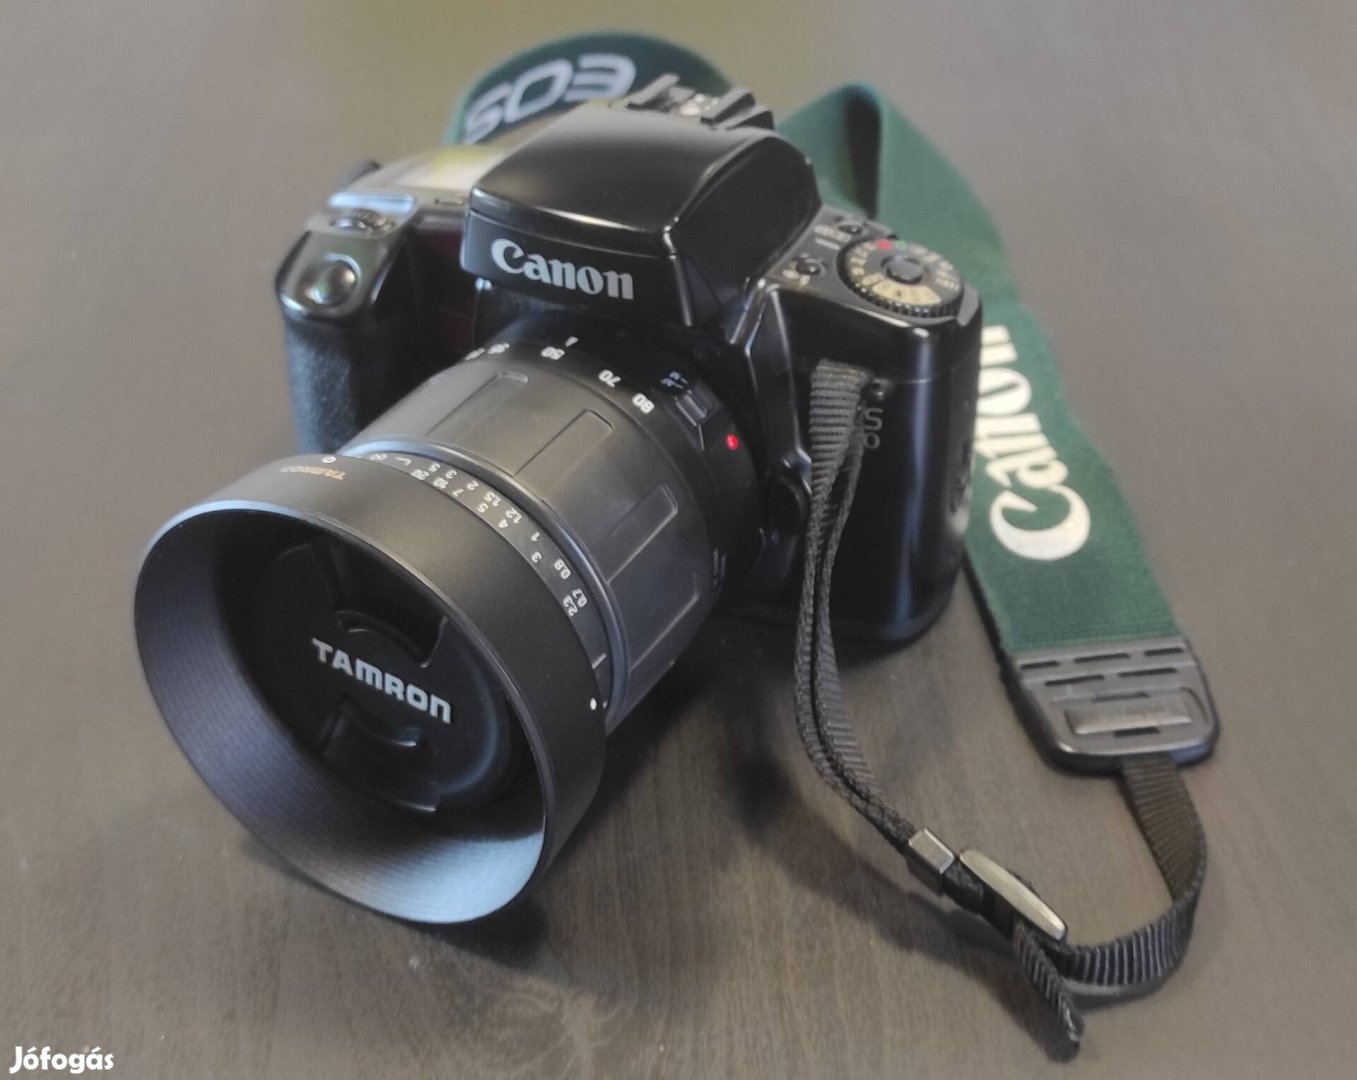 Akció Canon eos 100 analóg fényképezőgép tamron 28-80 objektívvel